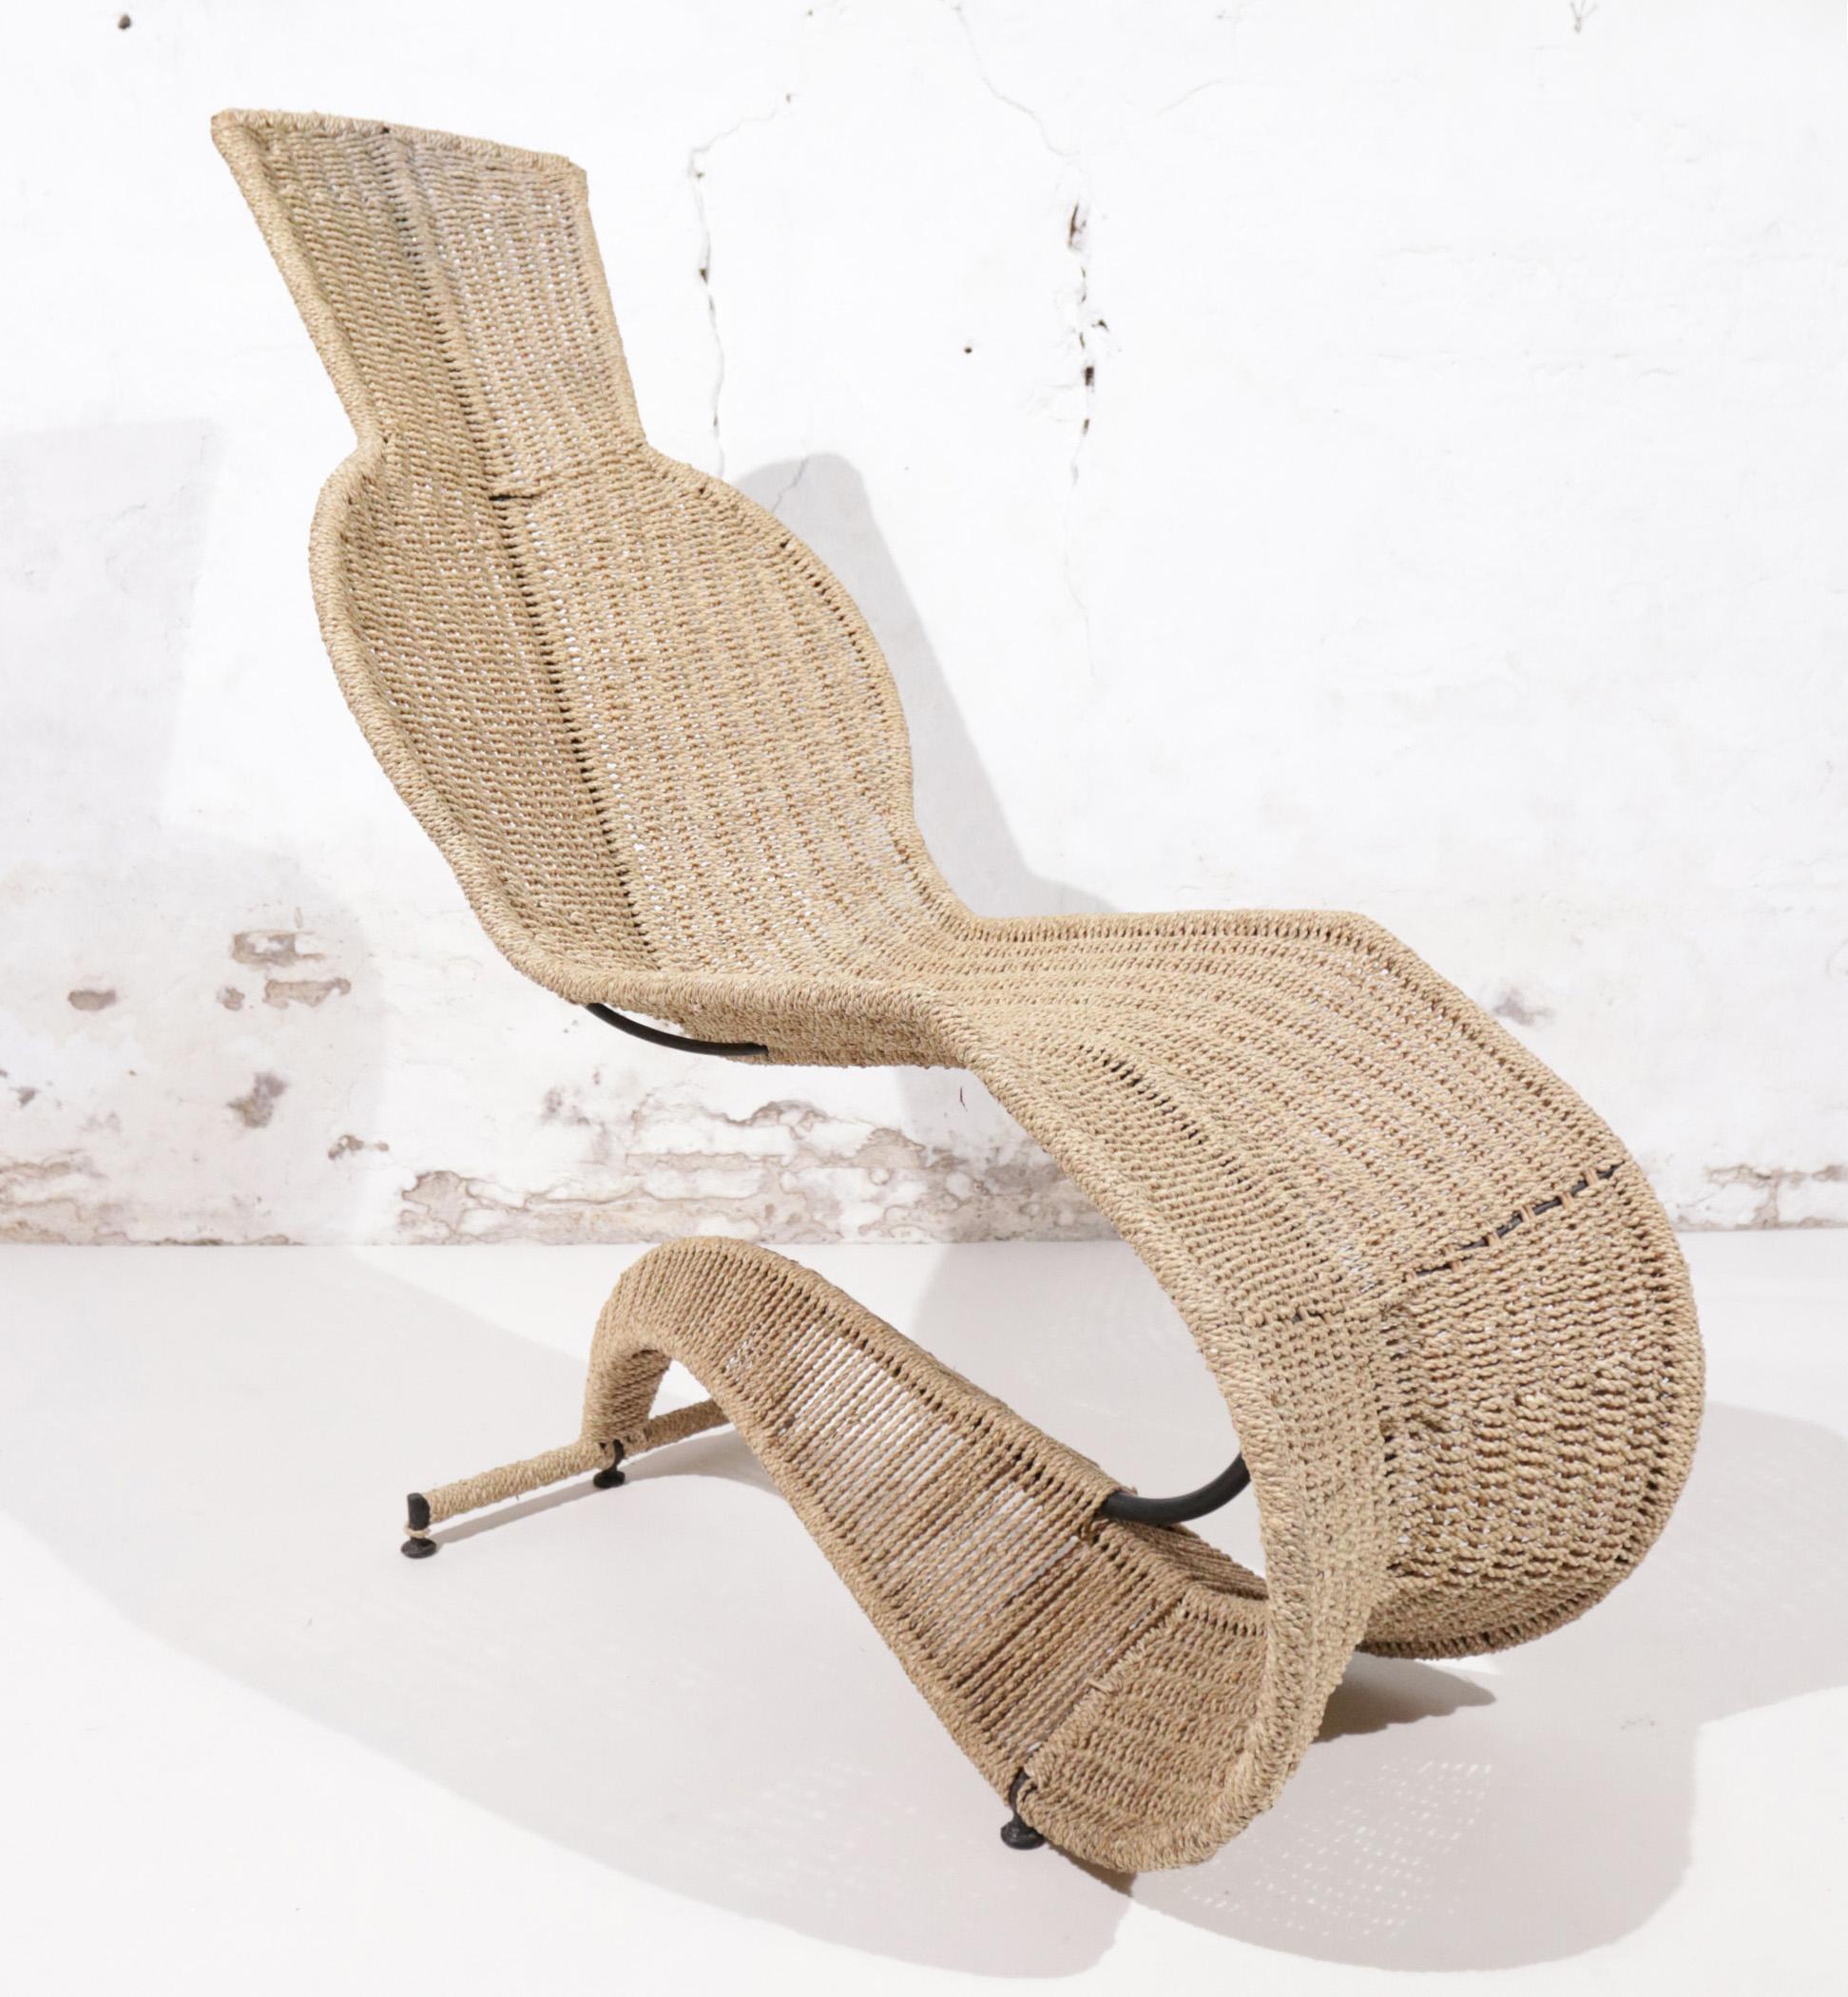 Einer der außergewöhnlichsten Stühle, die wir je hatten, ist dieser von Tom Dixon entworfene Stuhl.
Ein Stahlrahmen als Skelett und geflochtenes Seegras als Haut machen ihn zu einer echten Skulptur.
Er sieht nicht nur cool aus, er ist auch sehr